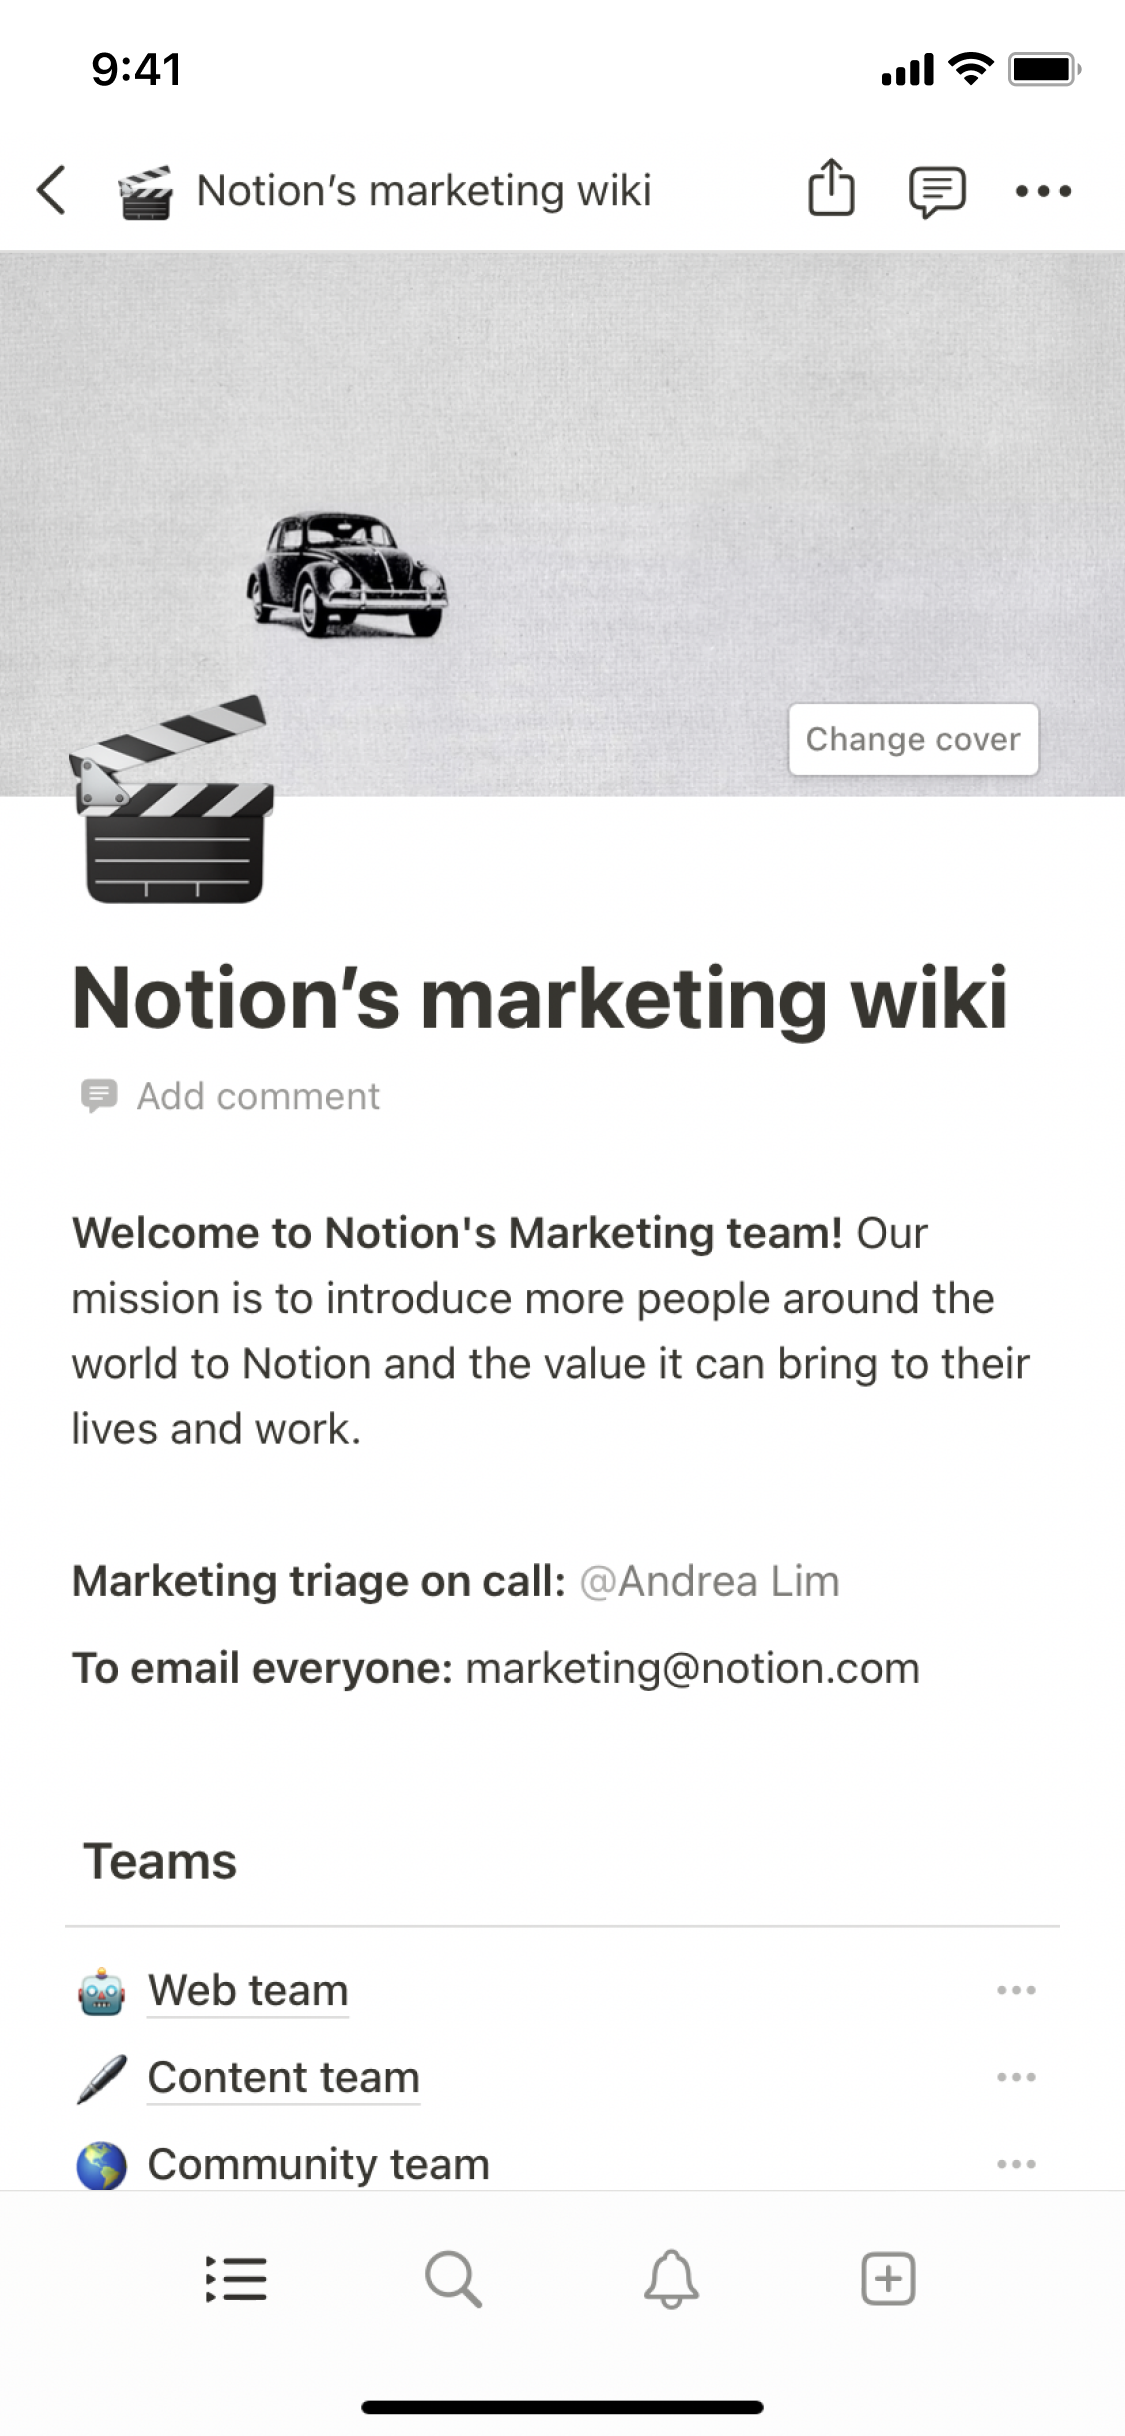 Een schermafbeelding van de mobiele app van Notion